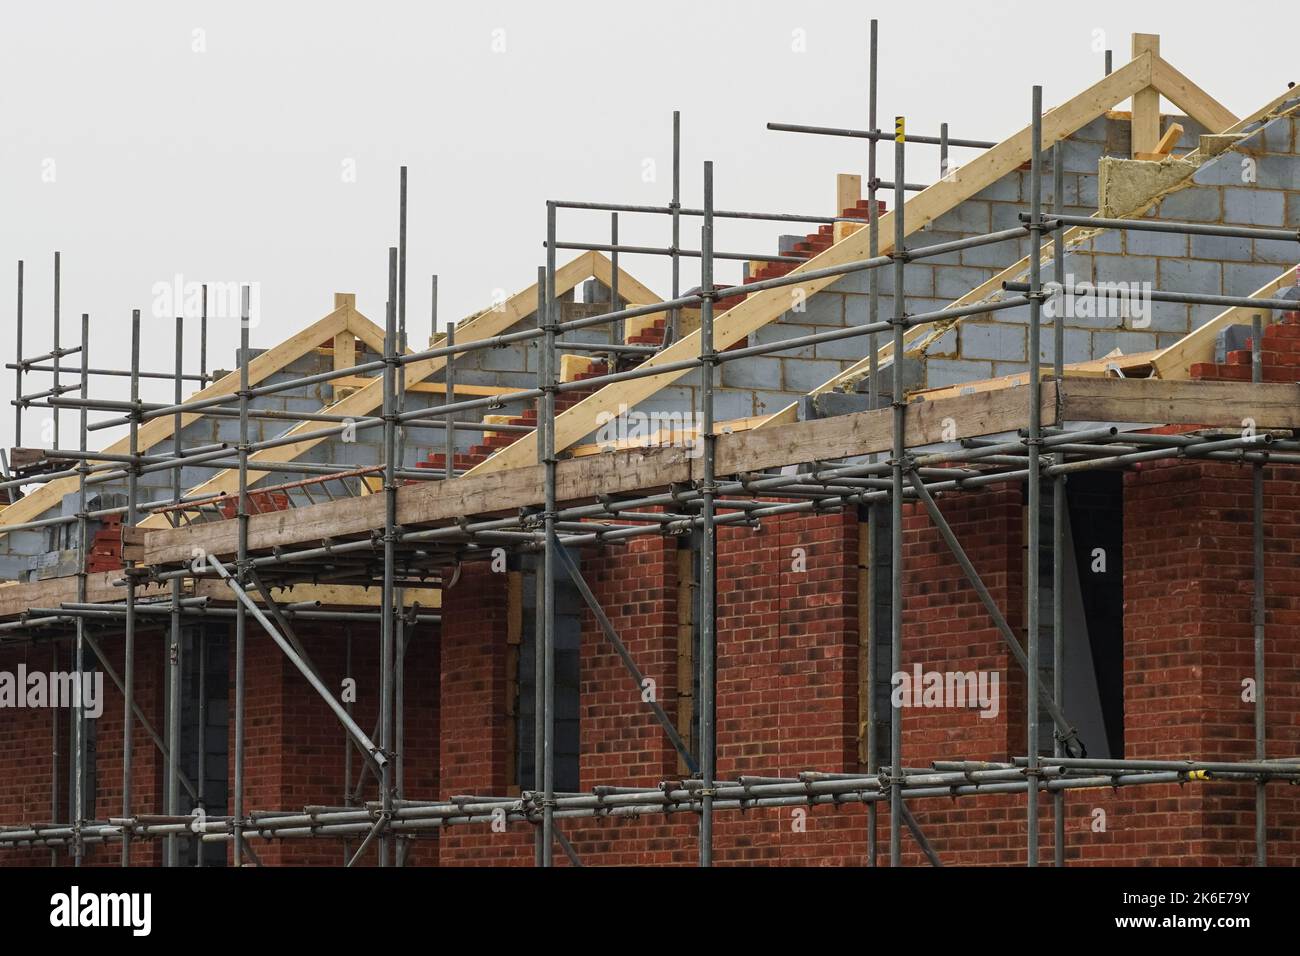 Nouvelle construction de toit sur le site de construction de maisons, structure en bois d'une nouvelle maison de construction, Londres Angleterre Royaume-Uni Banque D'Images